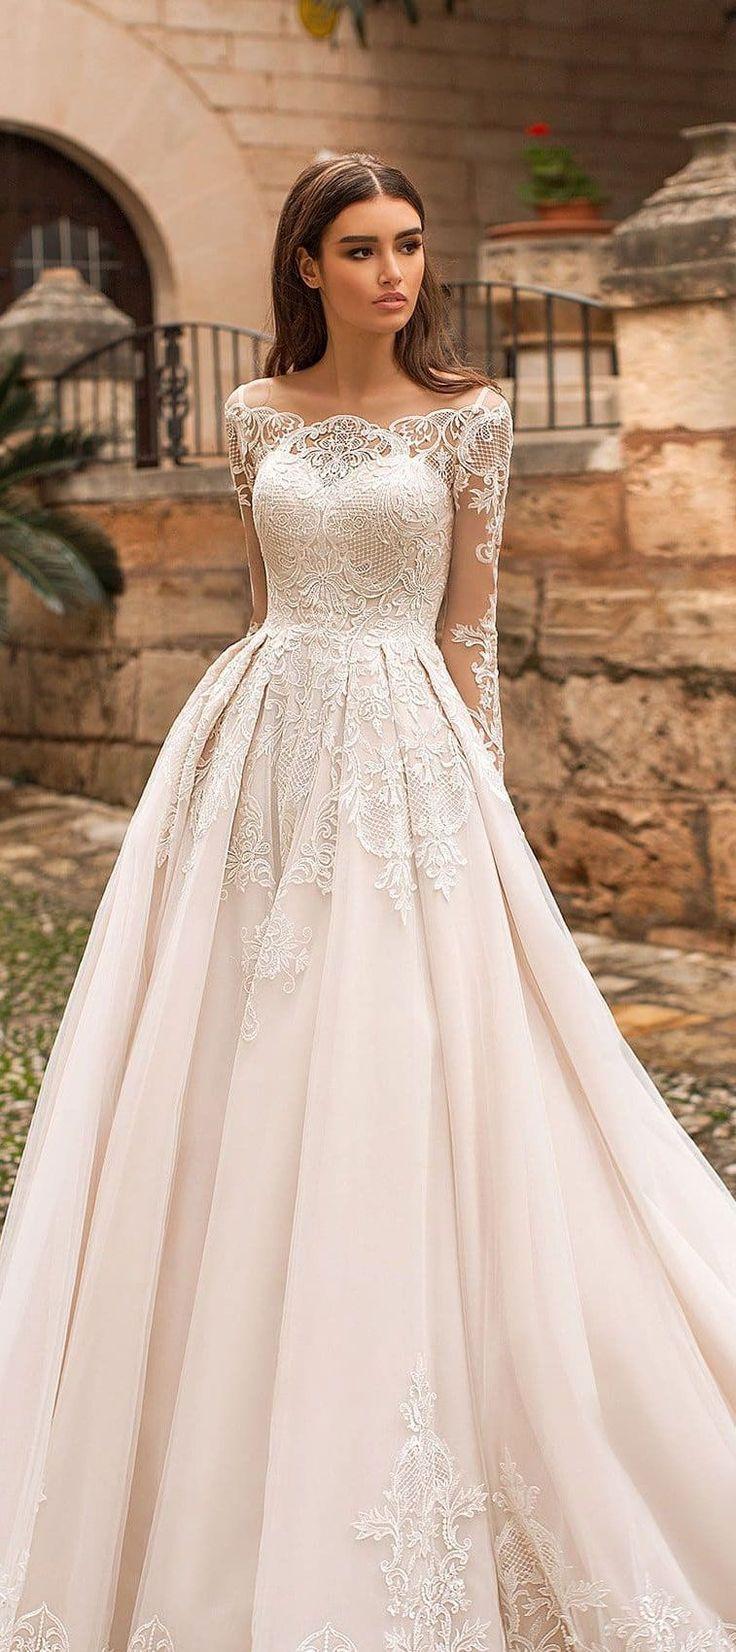 Naviblue Bridal 2018 Wedding Dresses ...